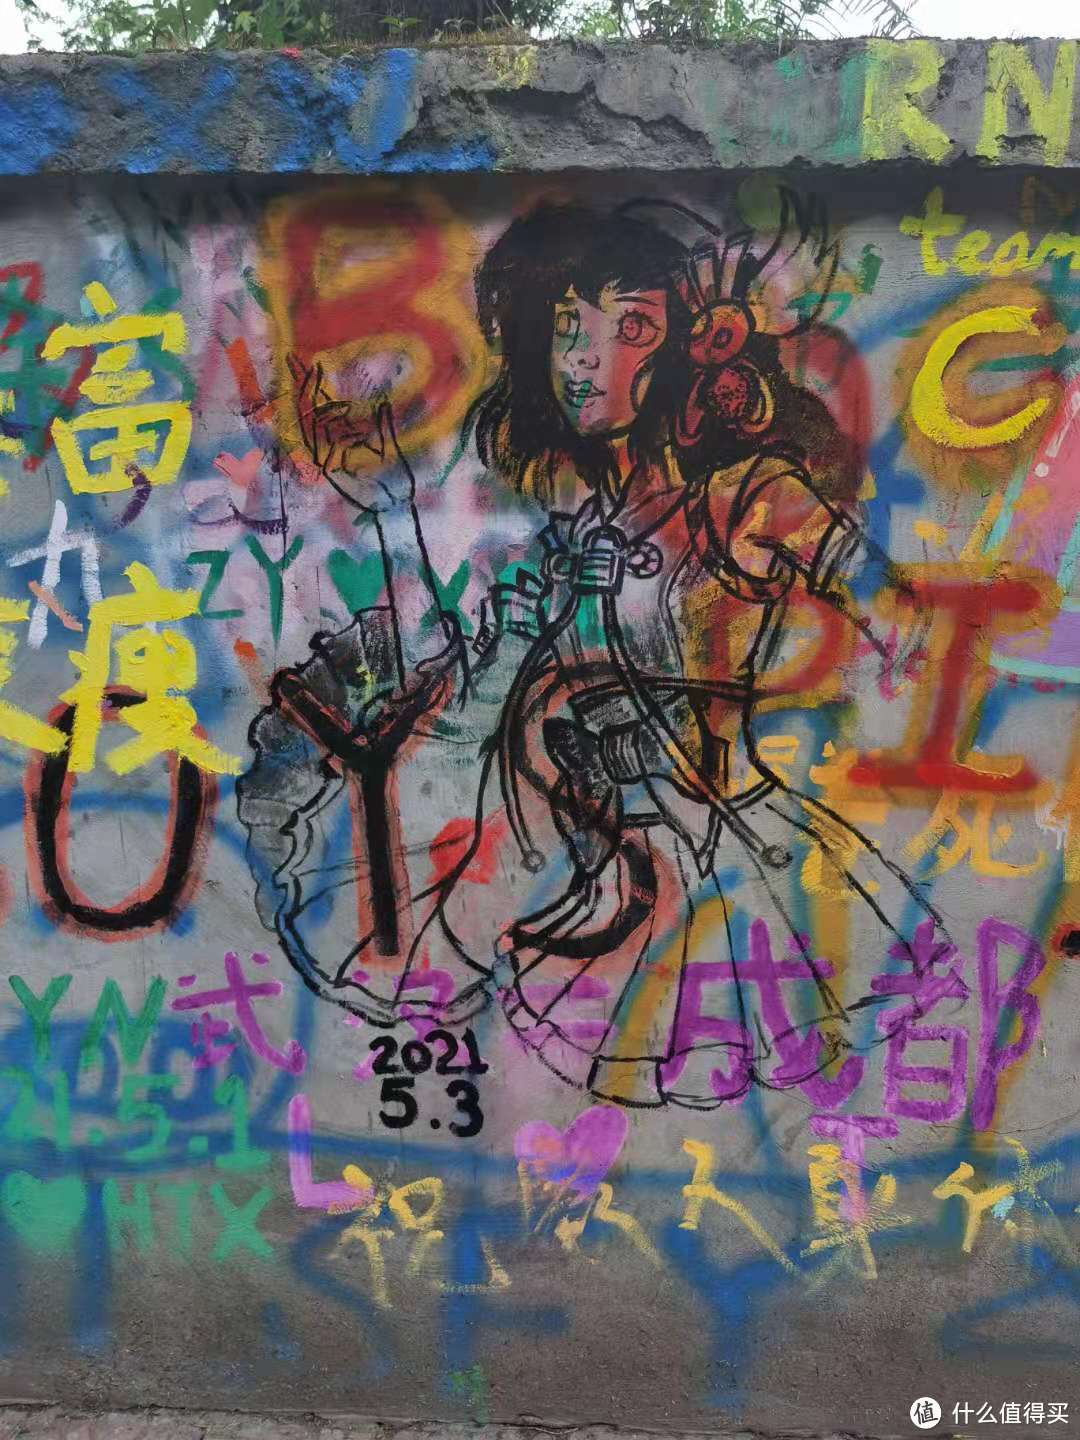 追星女孩必打卡的重庆一条街——黄桷坪涂鸦艺术街